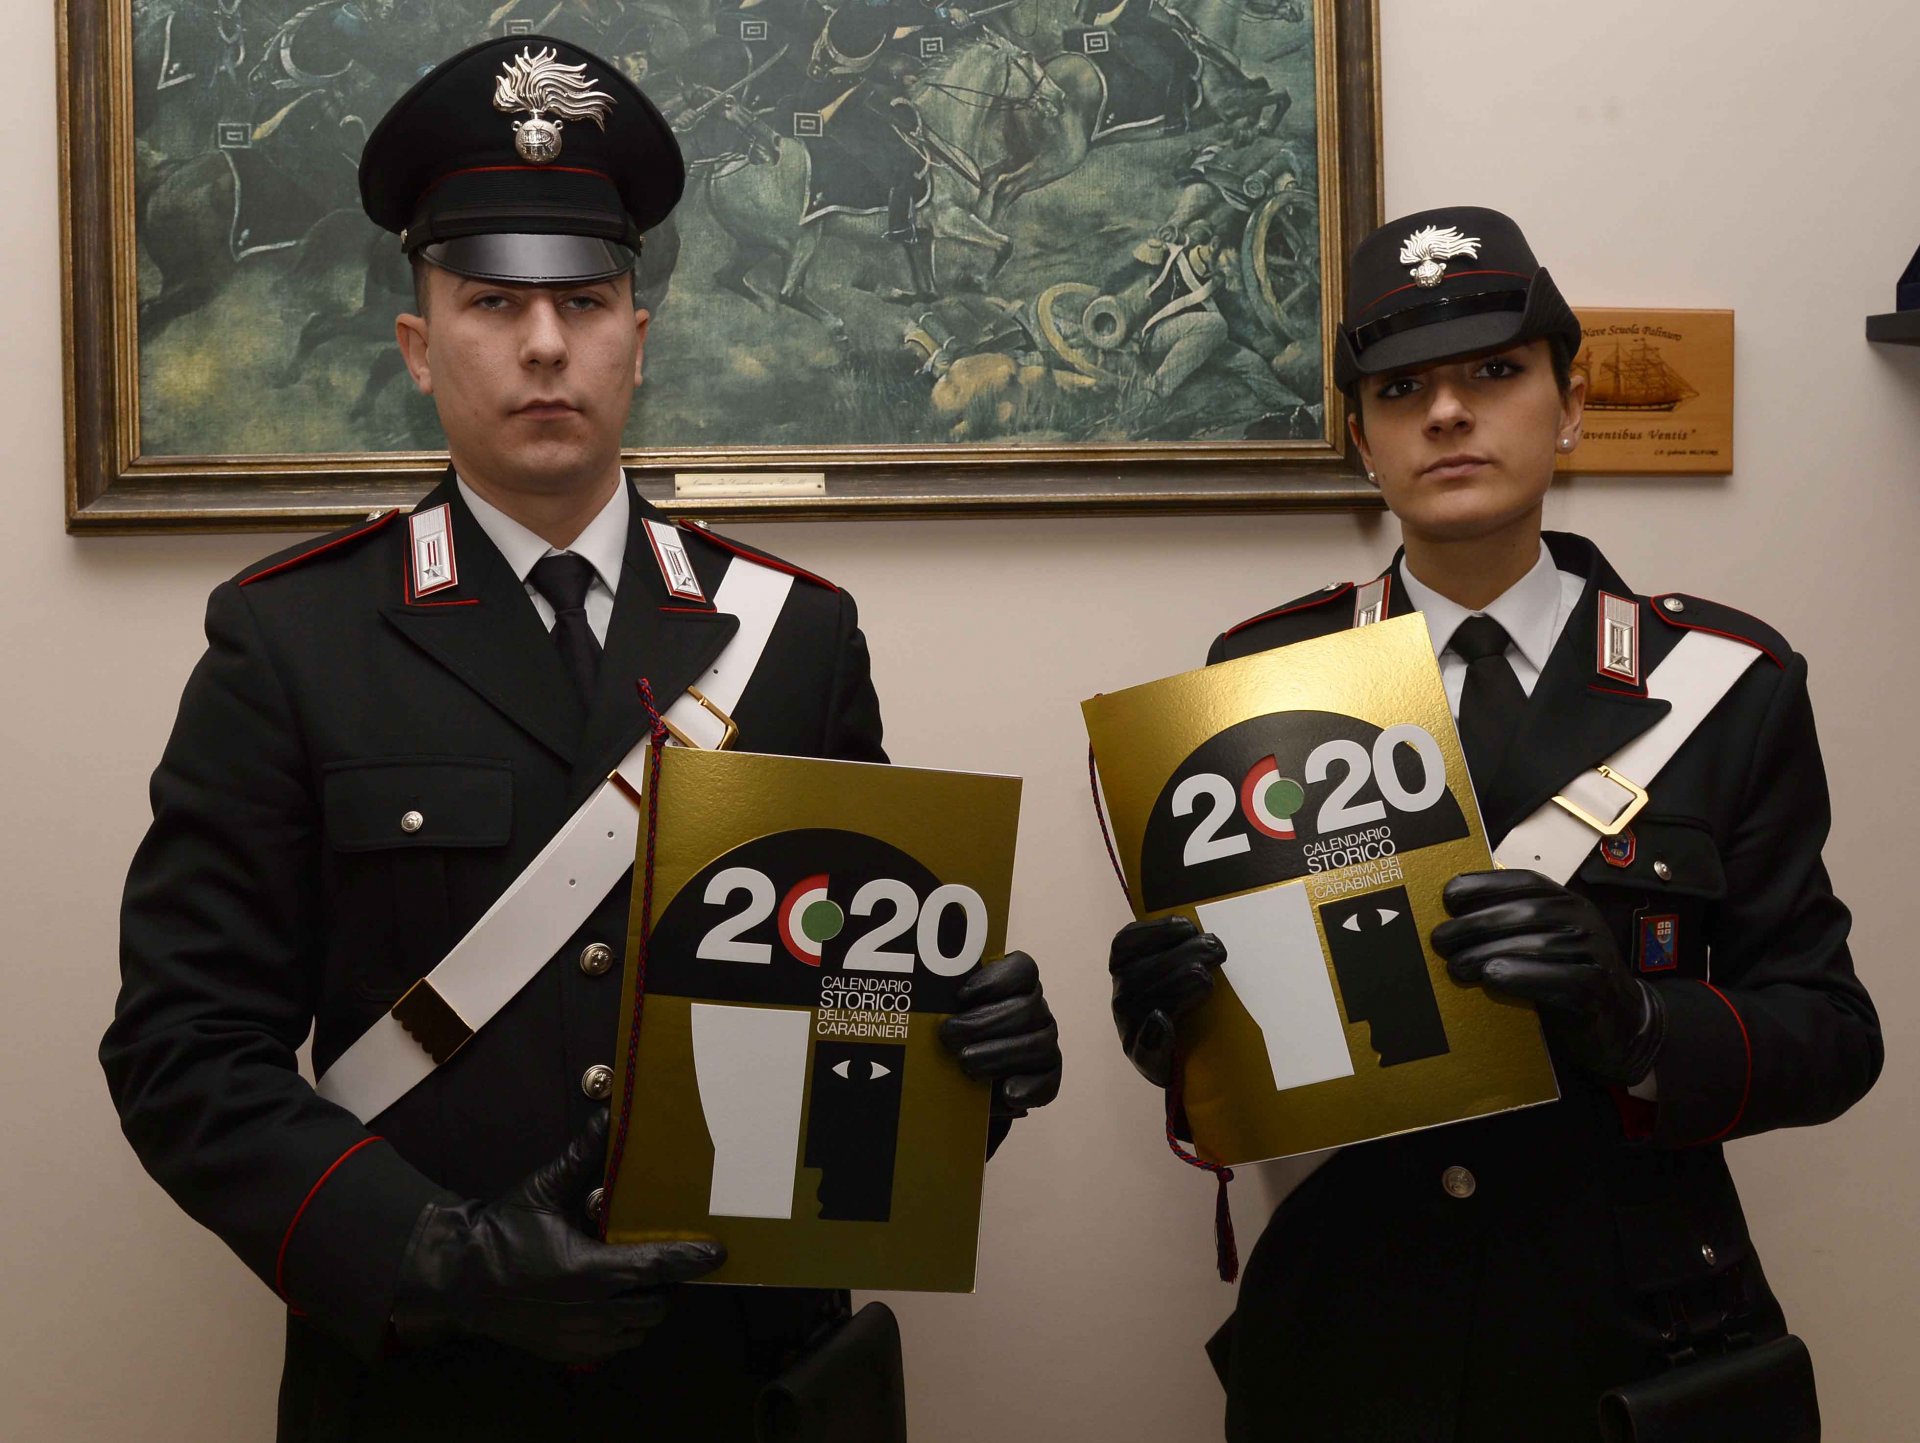 Presentato oggi il Calendario Storico e l'Agenda dell'arma dei Carabinieri  2020 - Prima la Riviera